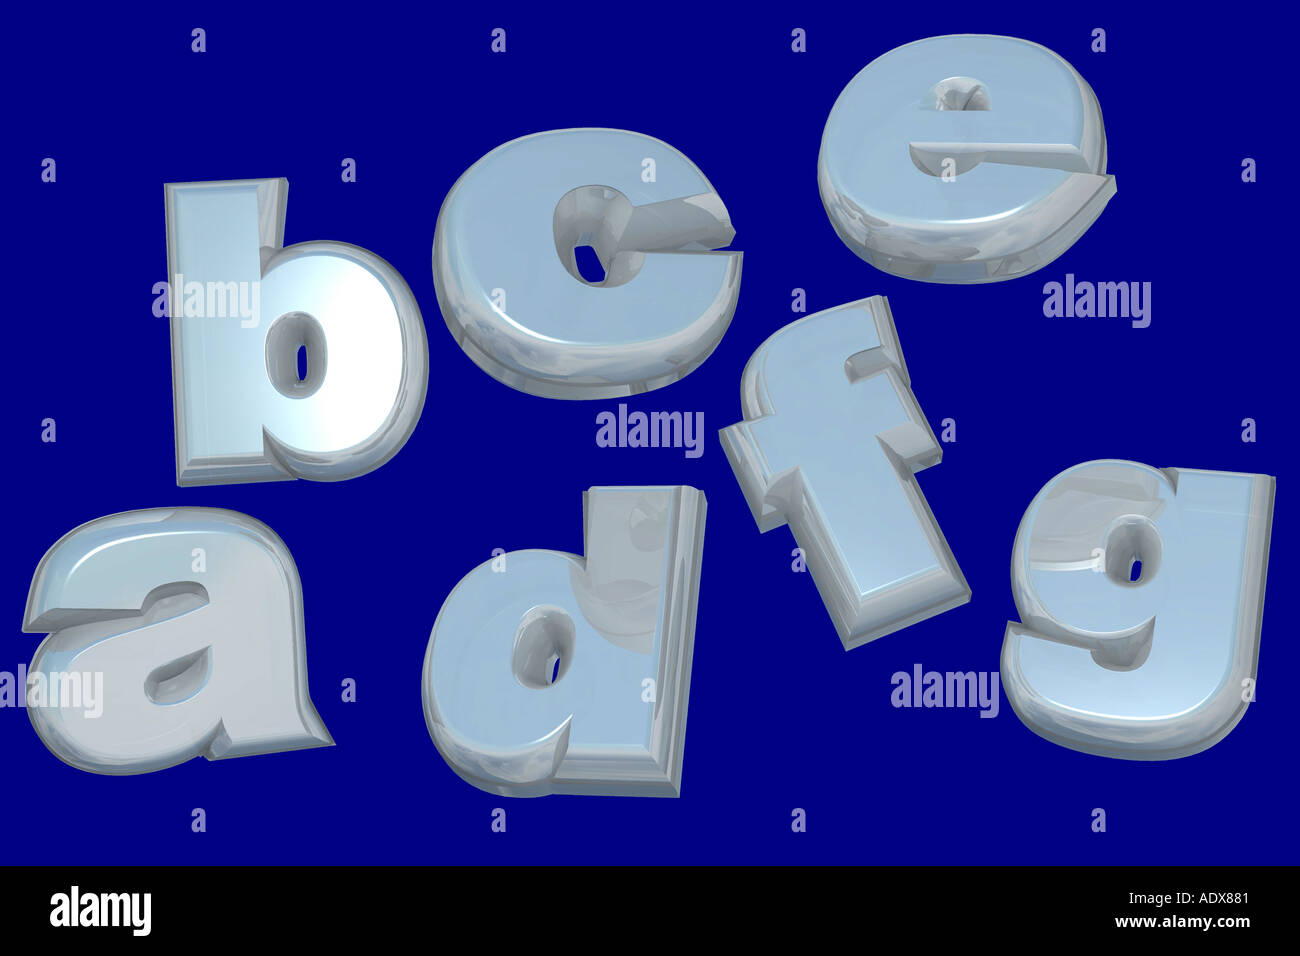 Le illustrazioni lettere abc a b c d e f g alfabeto sette literacy literate blue istruzione varie texture di sfondo Foto Stock